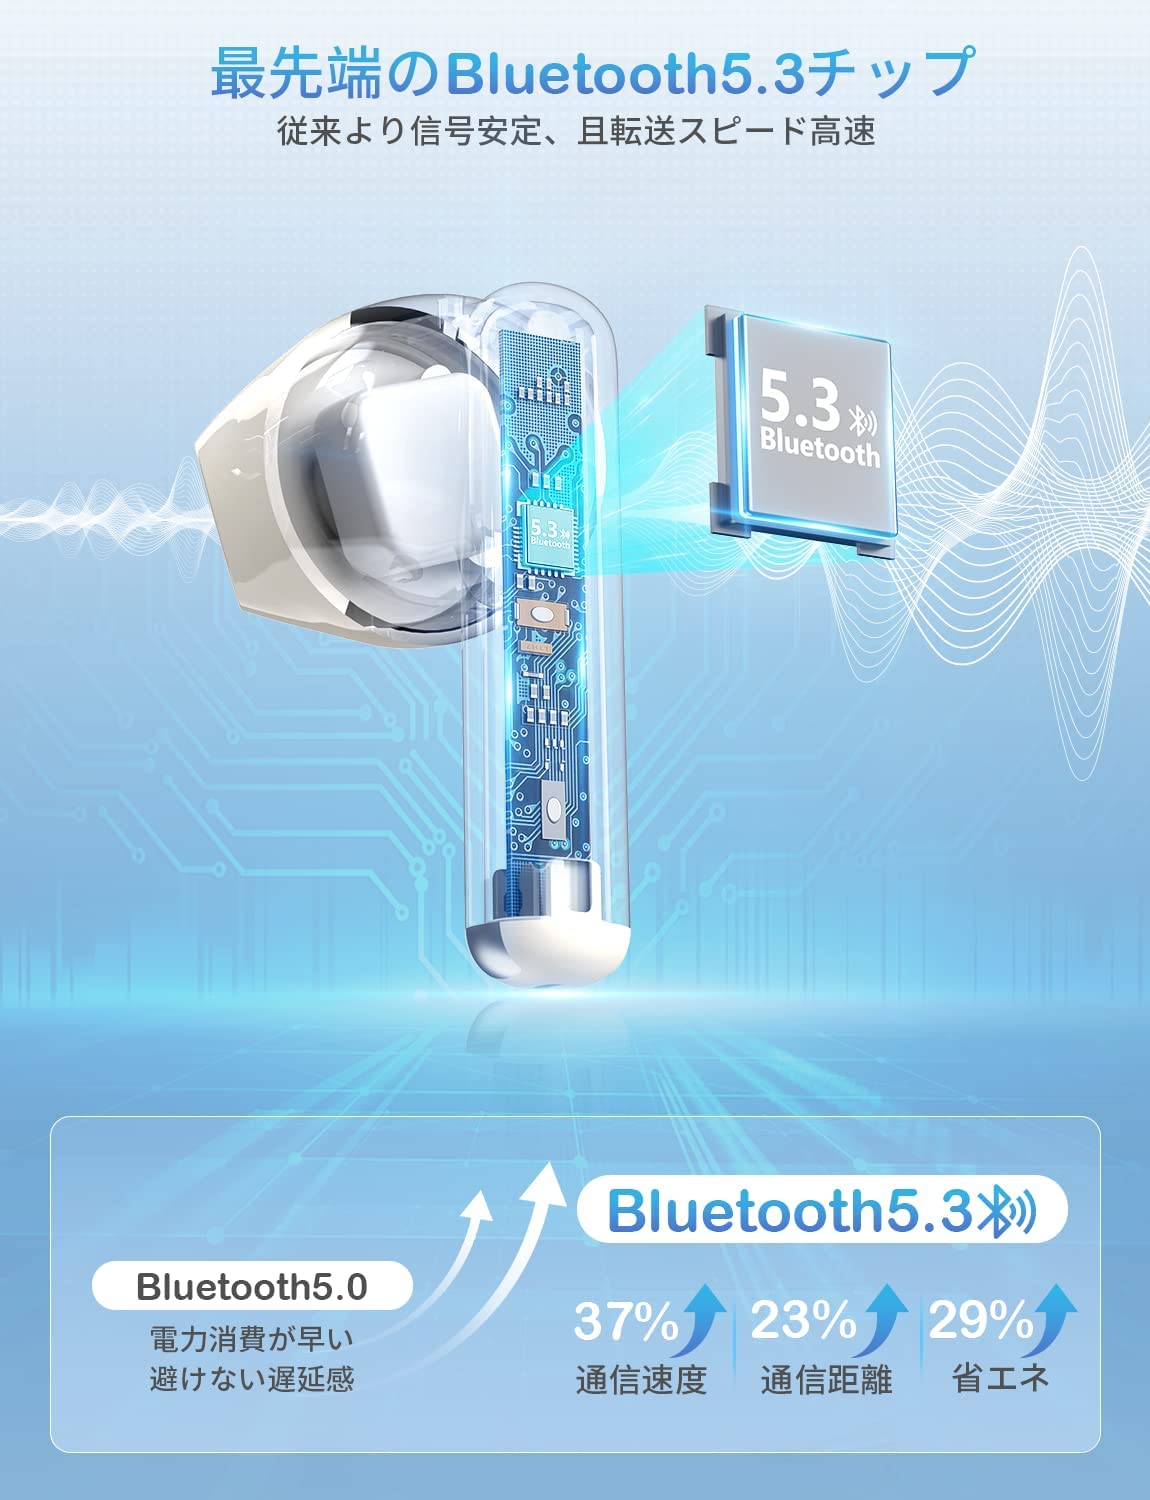 YOWHICK 完全ワイヤレスイヤホン Bluetooth 5.3+EDR ハンズフリー通話 CVC8.0 ノイズキャンセリング ぶるーとーす ヘッドフォン